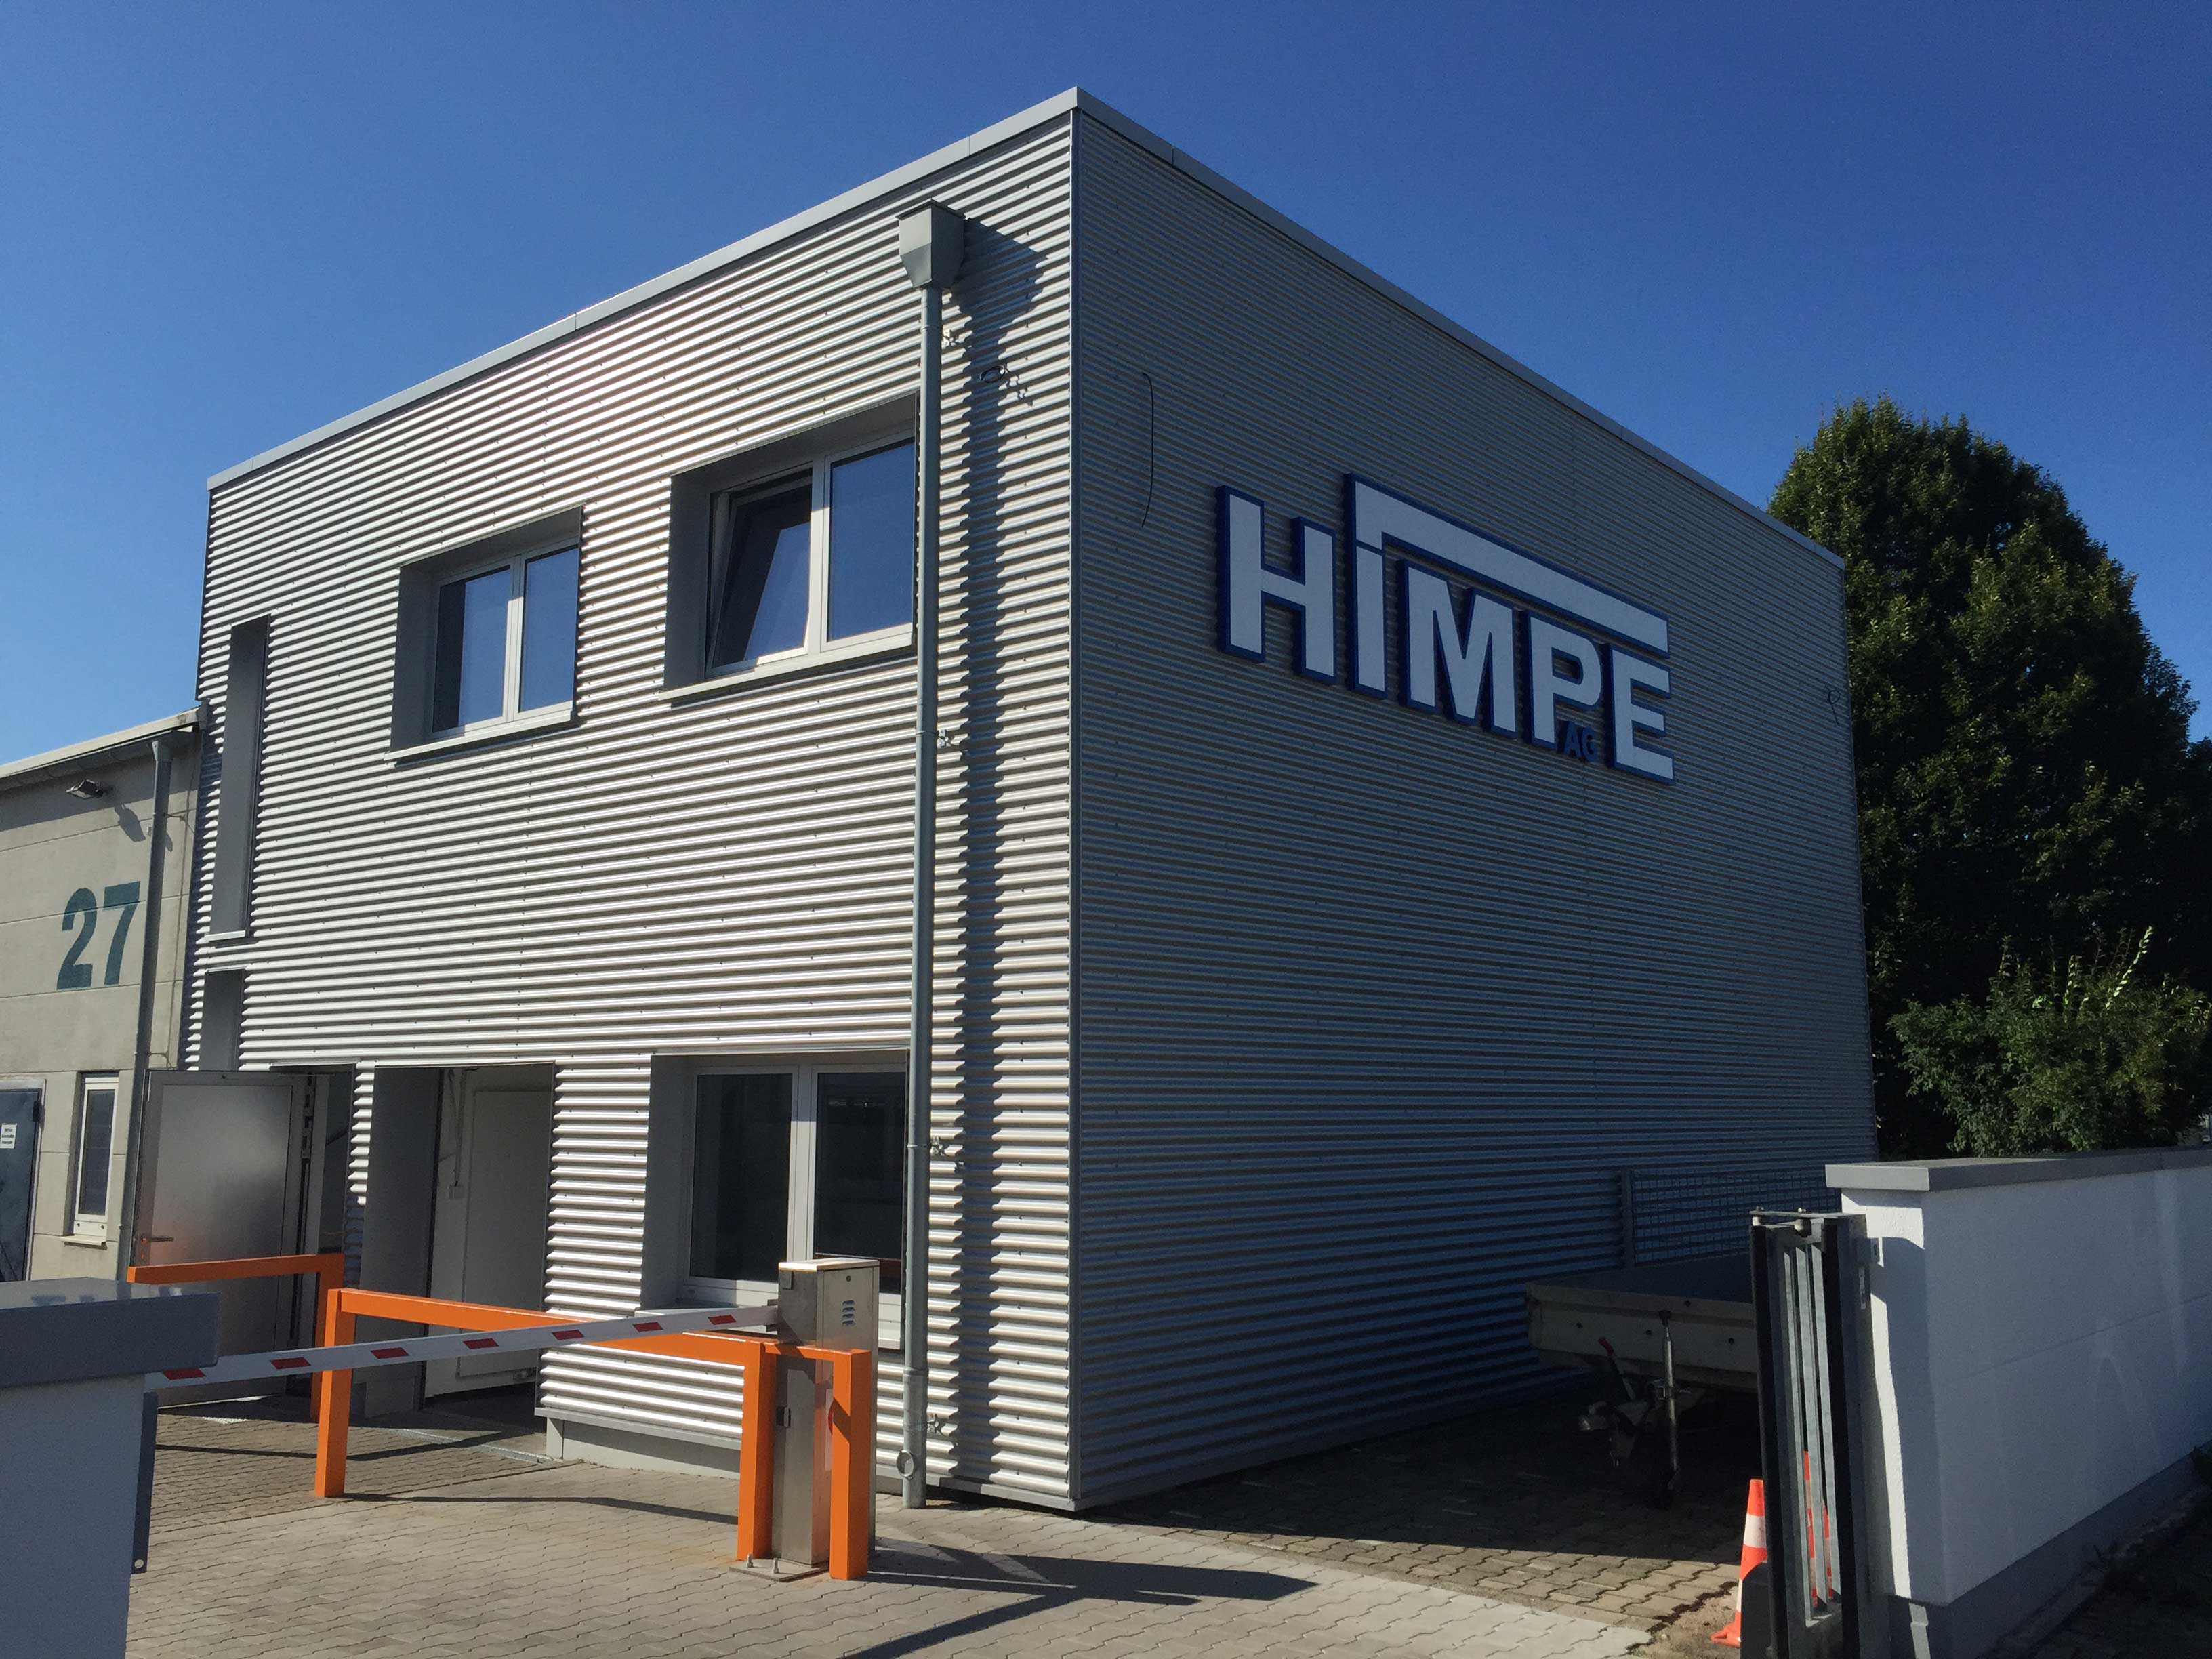 Architektur- & Ingenieurbüro Schulenberg in Hamm - Projekt: Erweiterung von einem Firmengebäude im Gewerbegebiet Hemsack in Kamen